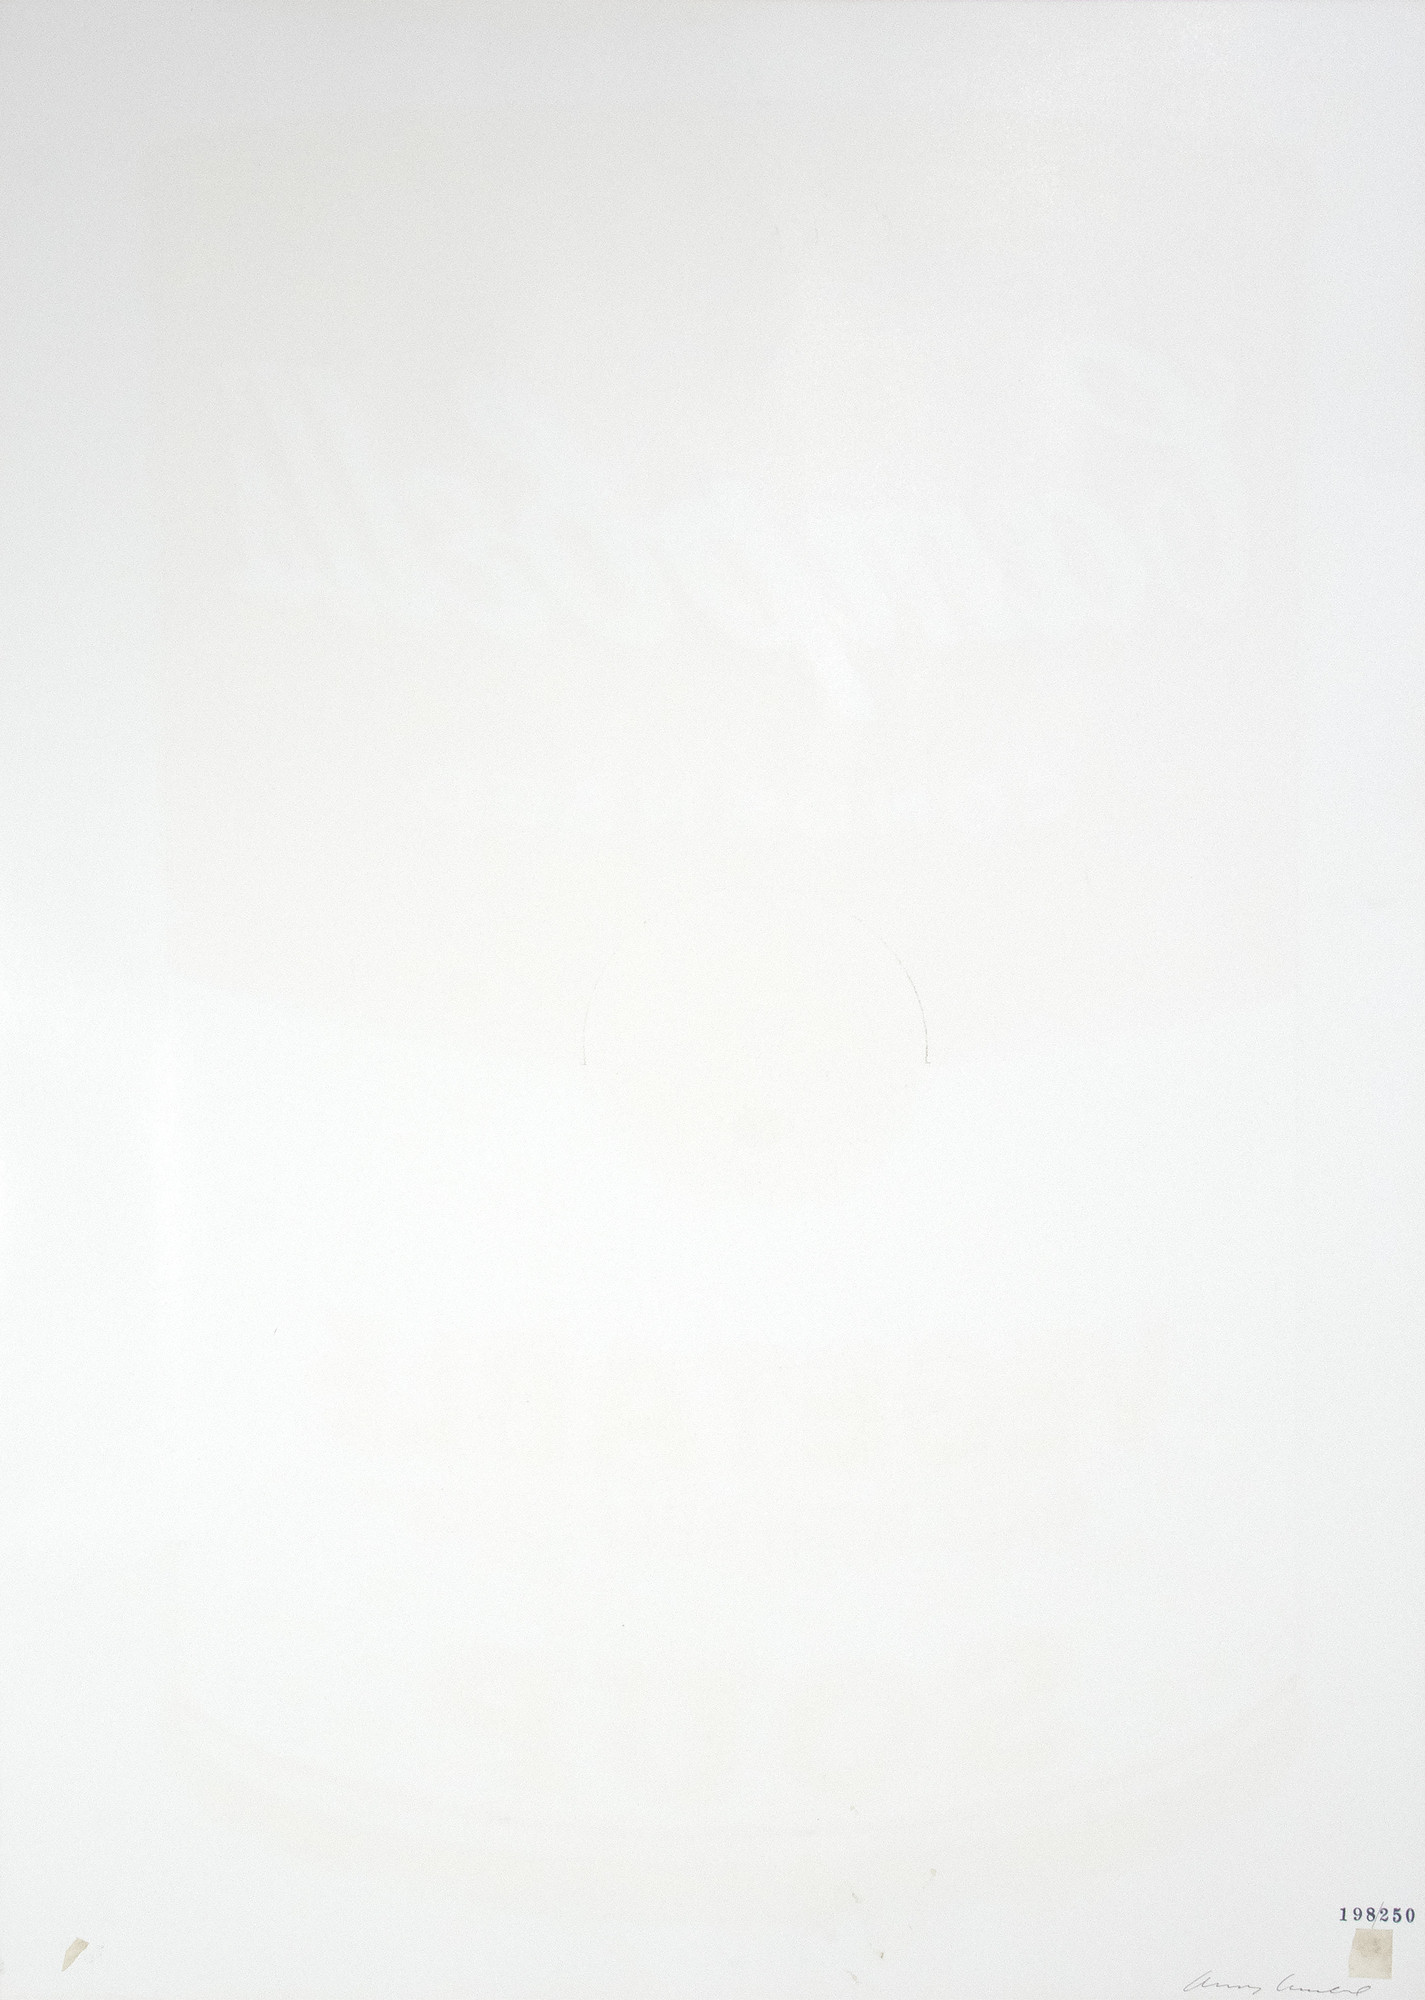 من اللافت للنظر السرعة التي احتضن بها عالم الفن آندي وارهول بعد يوليو 1962 عندما تم عرض لوحاته المكونة من ستة وثلاثين لوحة من علب حساء كامبل في معرض فيروس في لوس أنجلوس. من بين آخر أعماله المرسومة باليد ، سرعان ما اكتشف وارهول الشاشة الحريرية ، وهي الوسيلة التي يرتبط بها ارتباطا وثيقا. في حين أن لوحات علب الحساء المصنوعة يدويا تبدو منتجة ميكانيكيا ، كانت الشاشة الحريرية عملية ميكانيكية وتجارية مكنت وارهول من إنتاج تكرارات دقيقة غير محدودة واختلافات في الموضوعات الرئيسية. باعتبارها واحدة من 32 نوعا أصليا ، تظل الخضروات ظاهرة ثقافة البوب ، حيث تظهر على كل شيء من الأطباق والأكواب إلى ربطات العنق والقمصان وألواح التزلج على الماء.